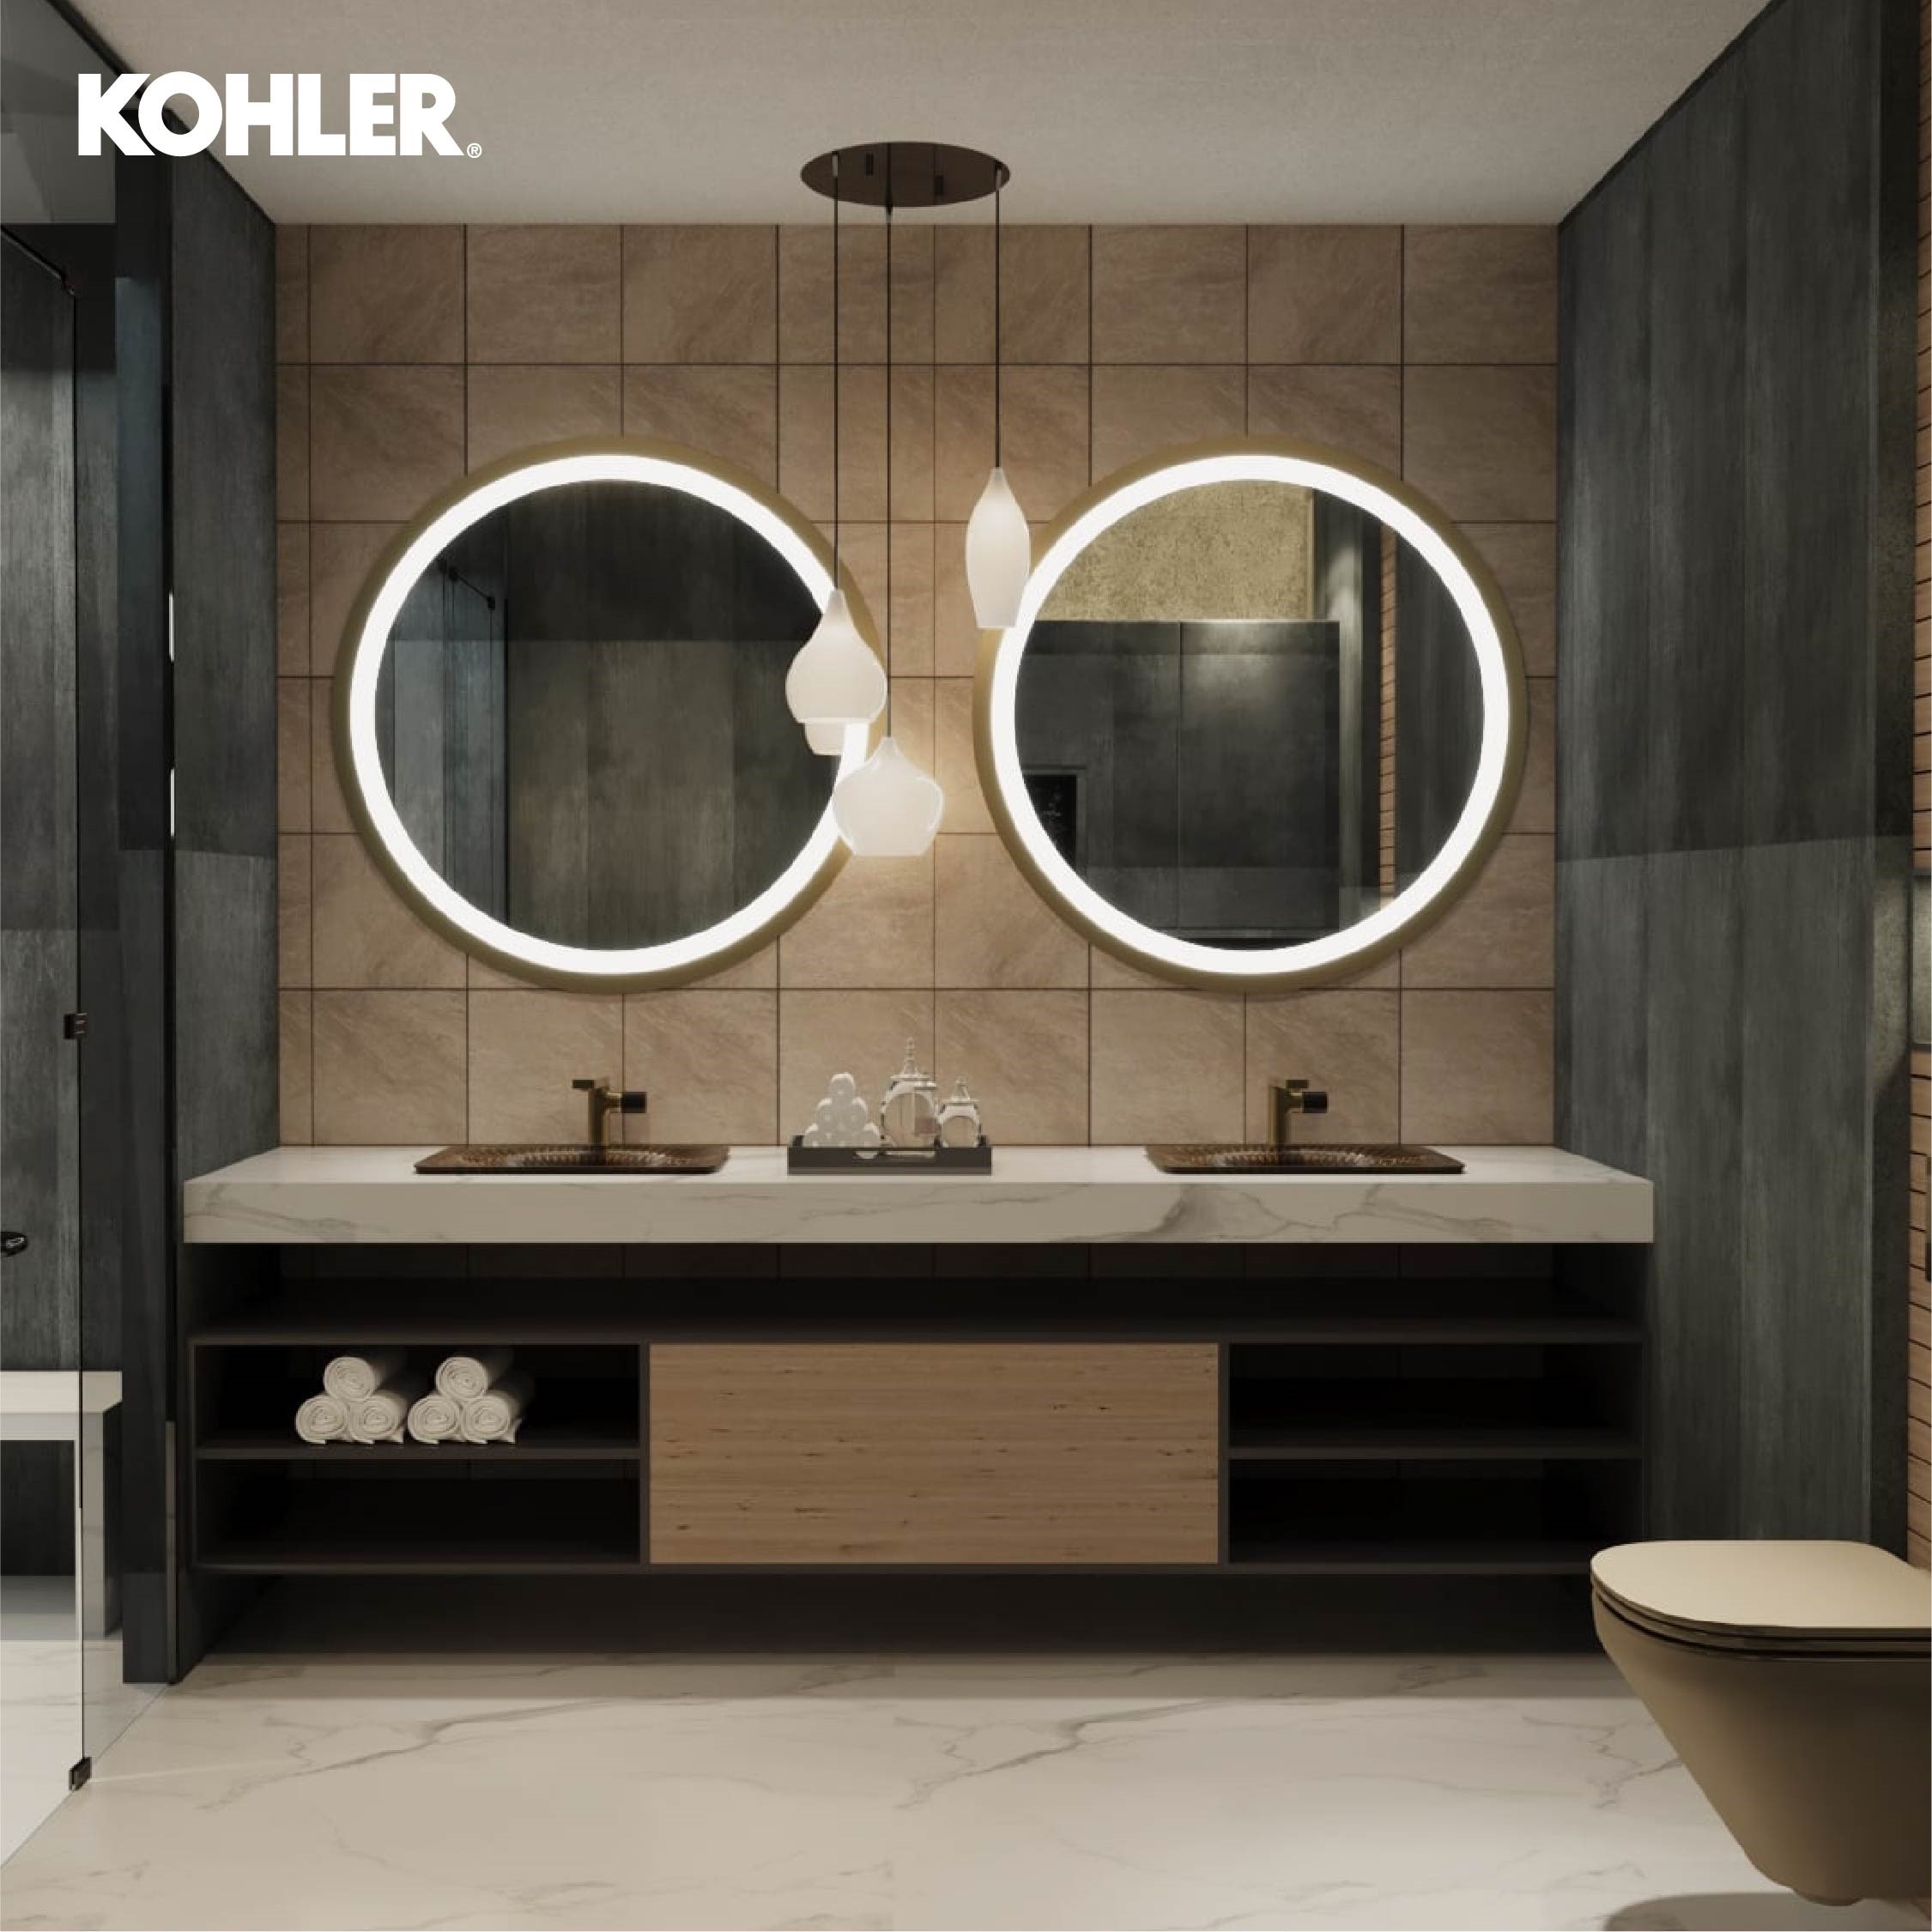 Kohler Lighted mirrors